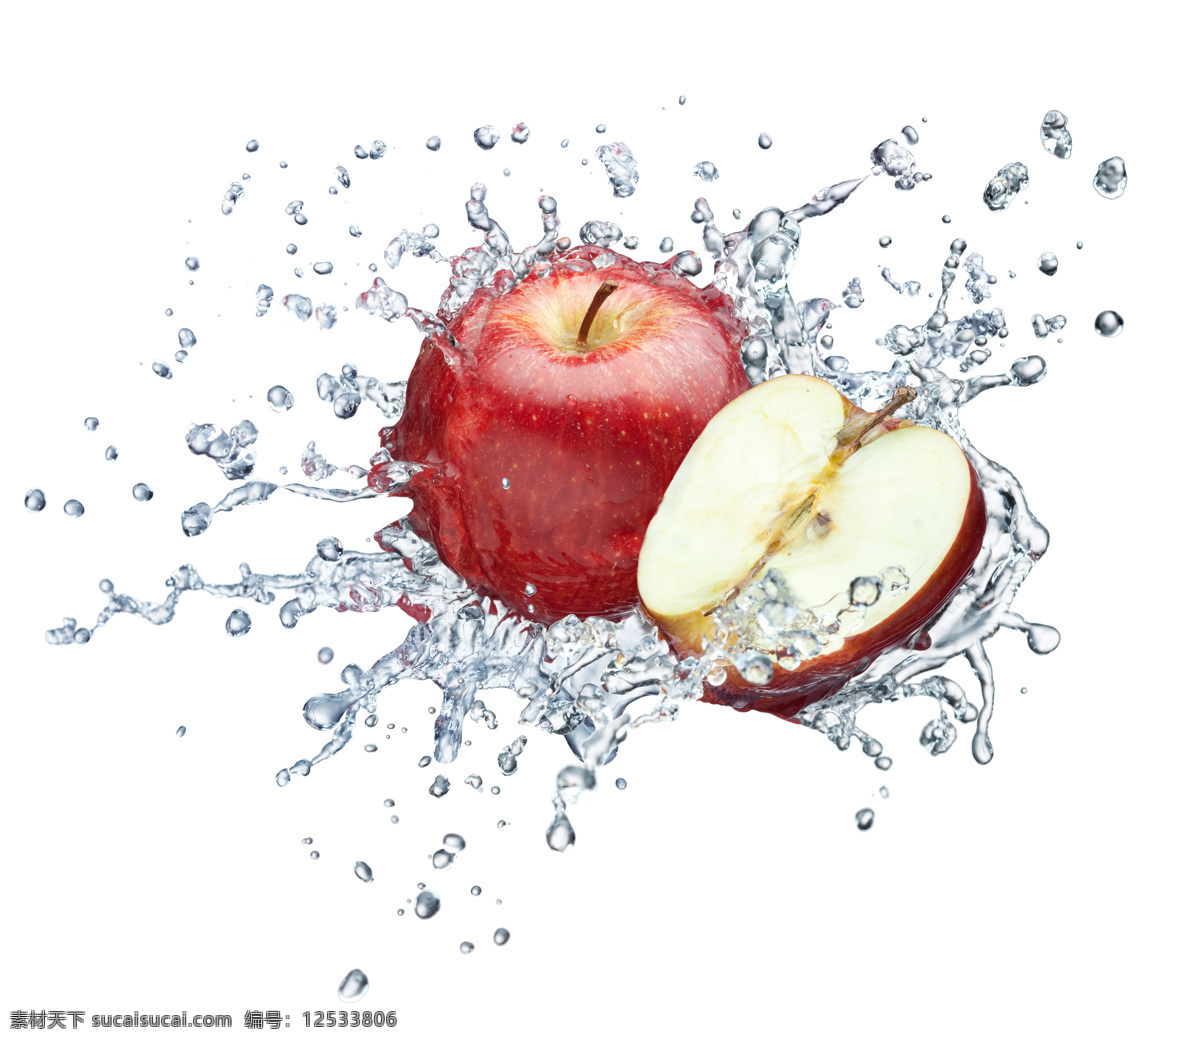 红苹果 绿叶 苹果 生物世界 水滴 水果 水花 水中 设计素材 模板下载 水中苹果 半边苹果 水珠水滴 叶子 美味水果